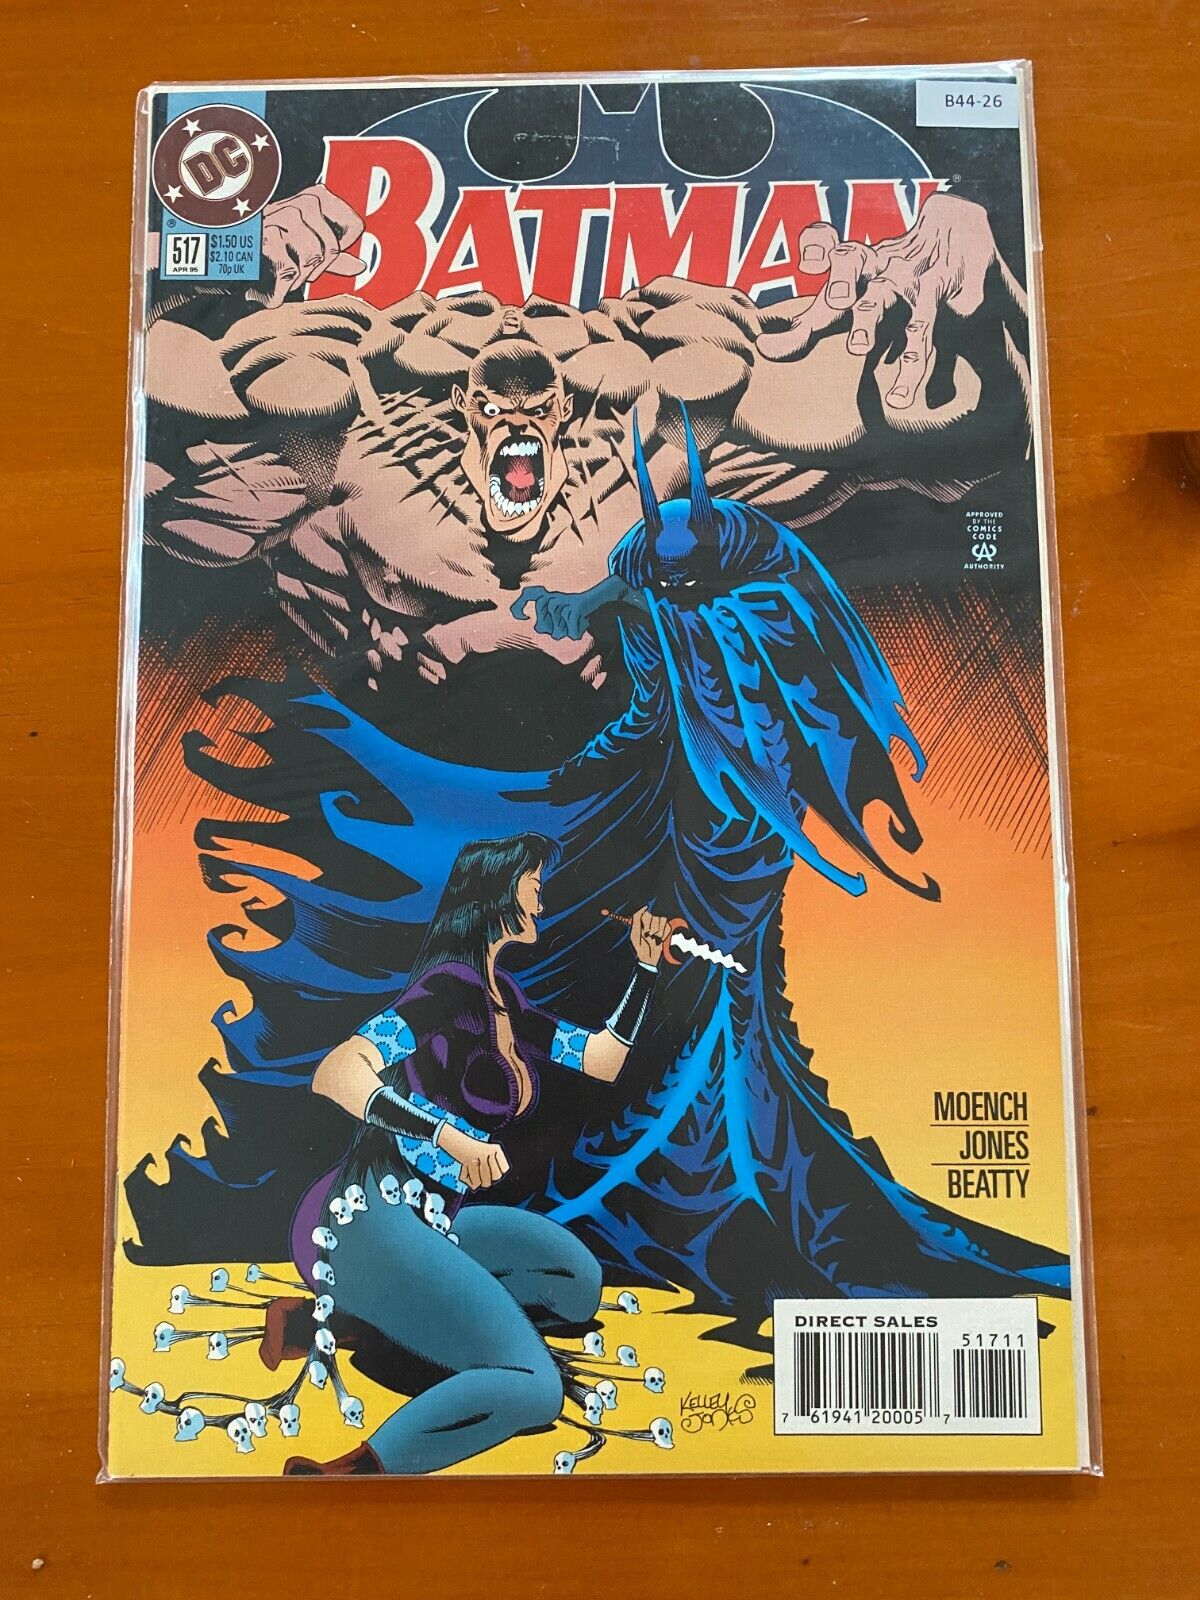 Detective Comics Batman 617 - High Grade Comic Book - B44-26